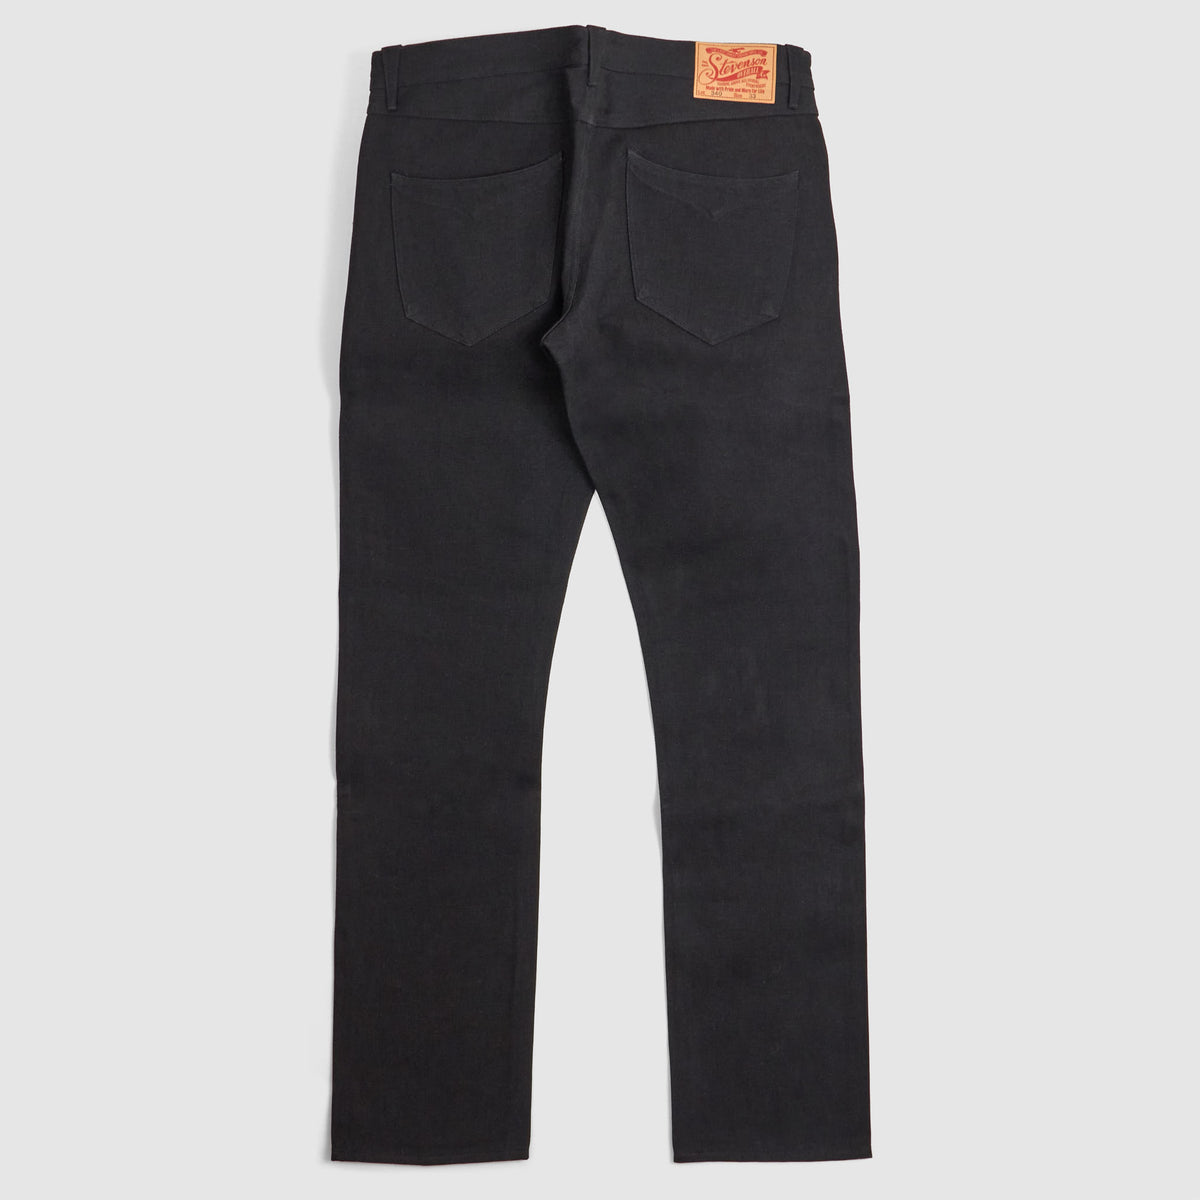 Stevenson Overall CO. Black Denim Western Denim Jeans